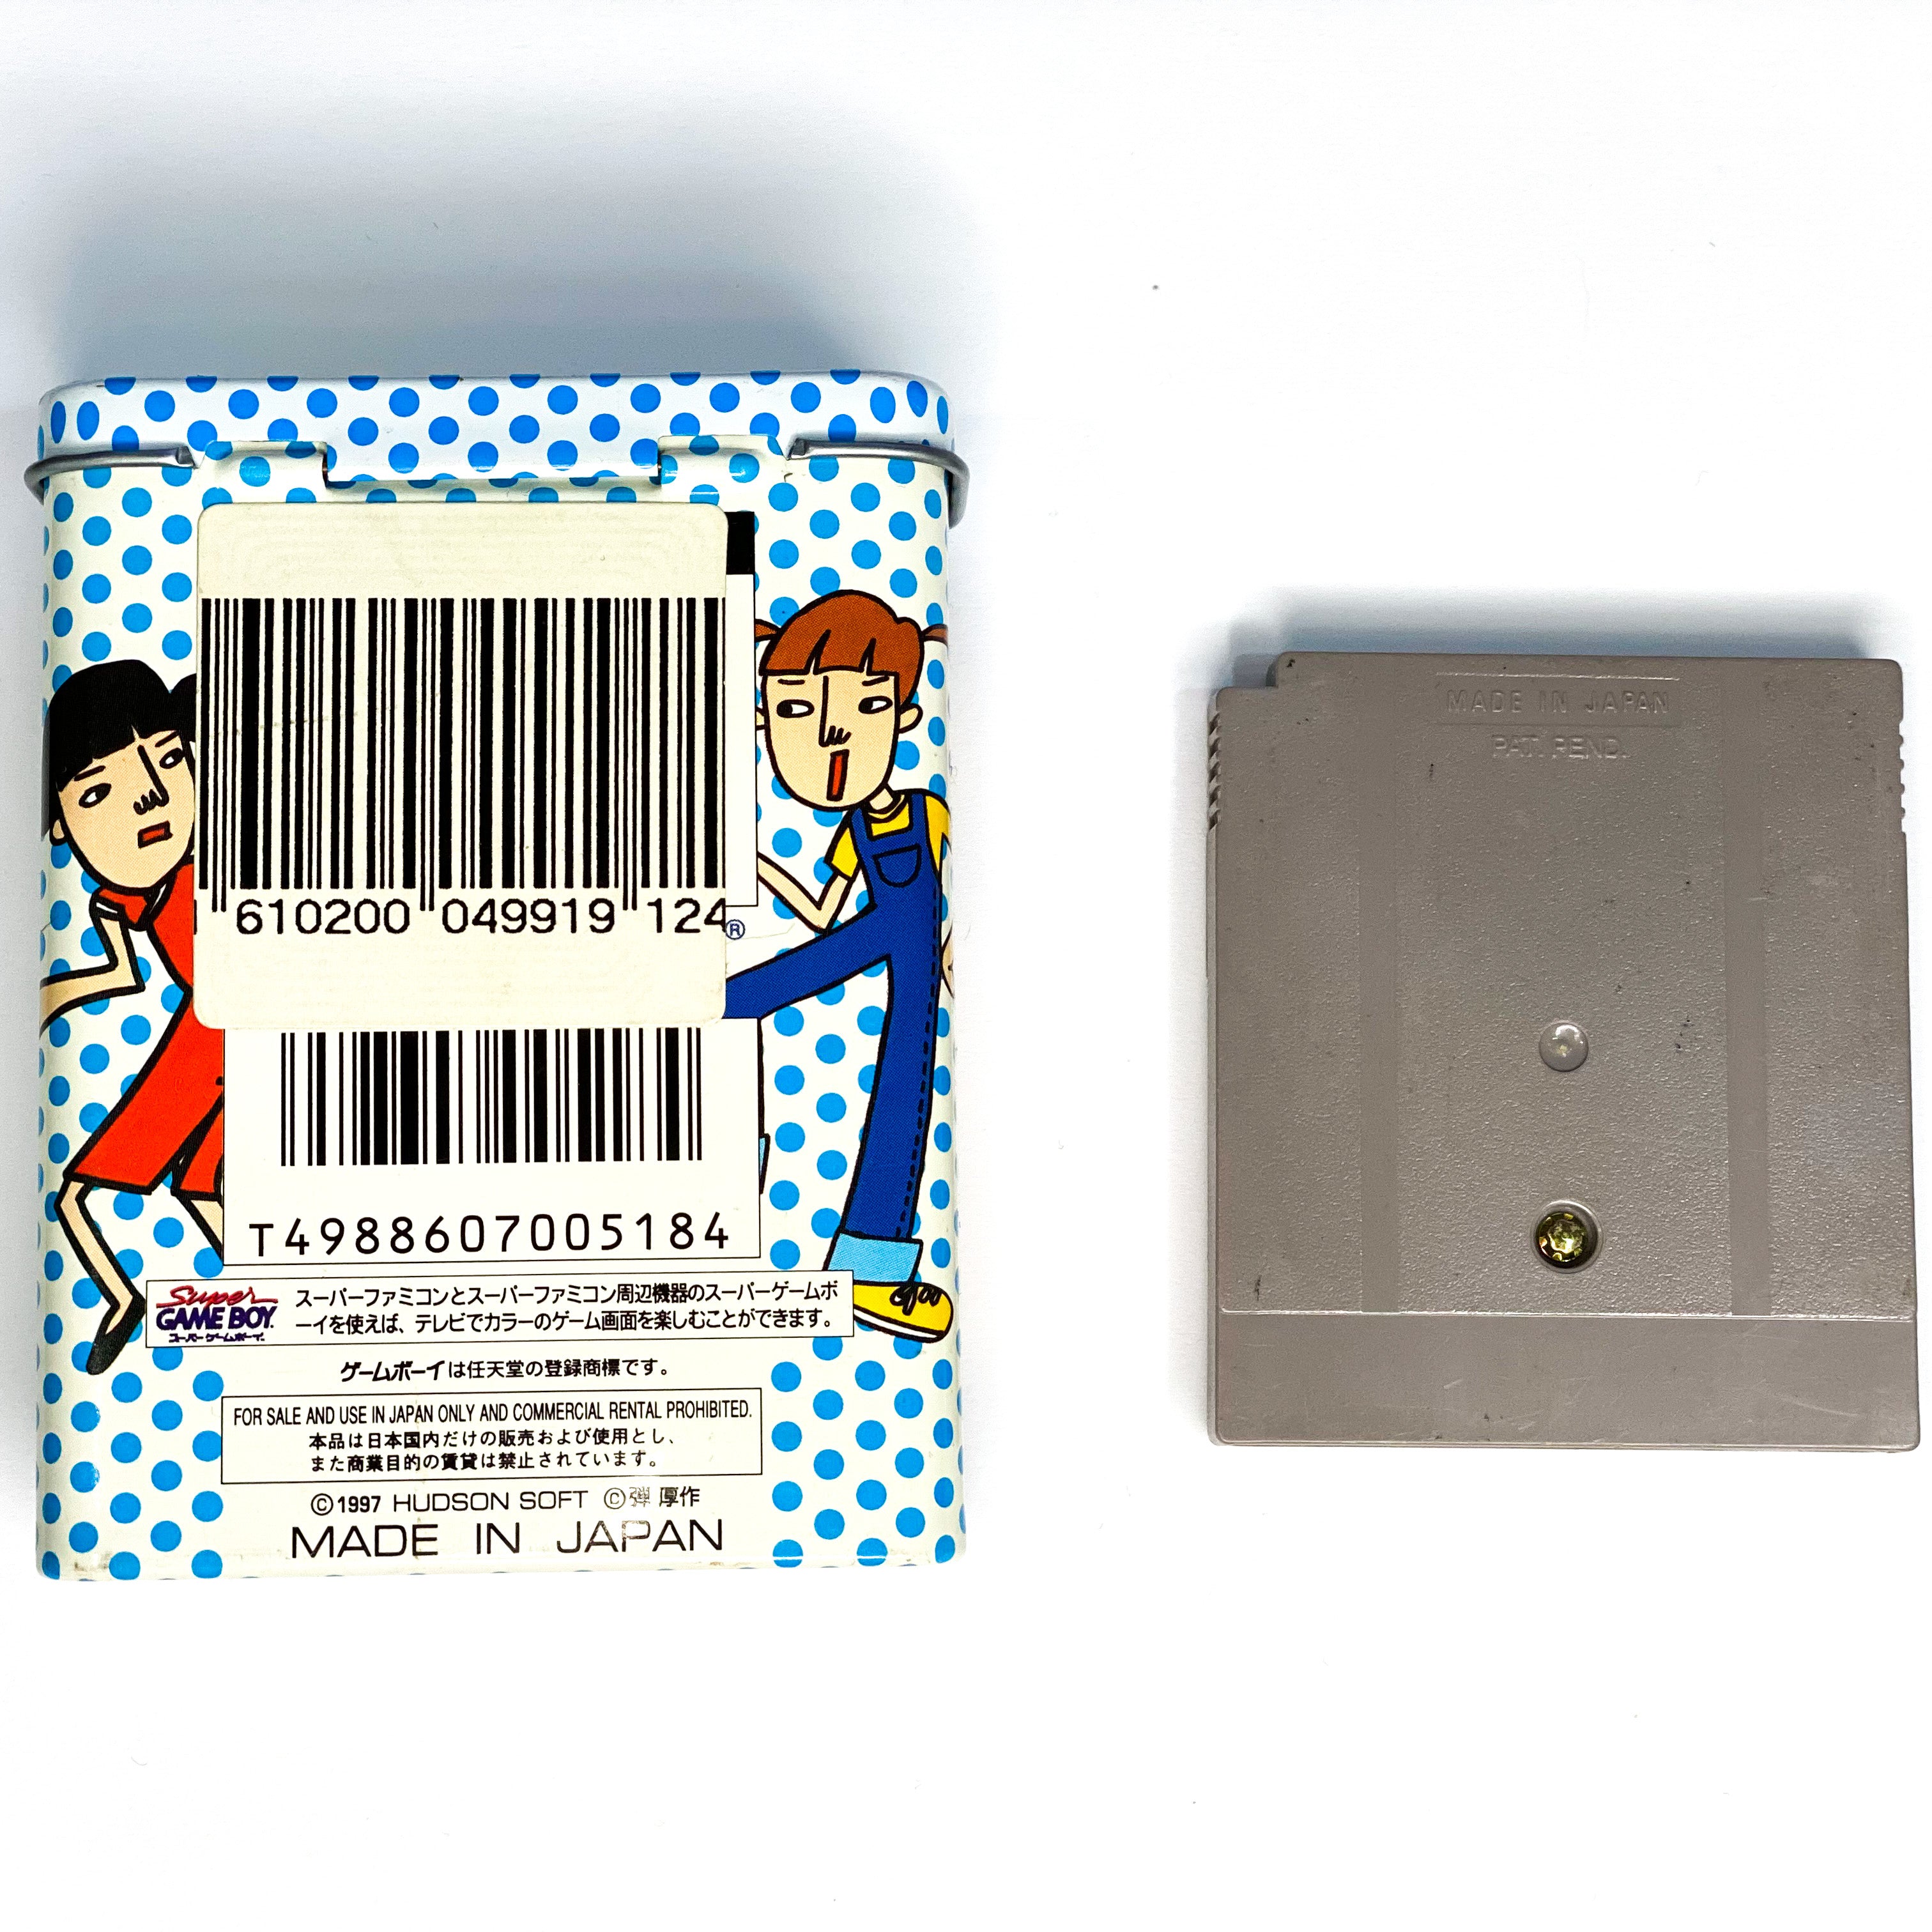 Same Game Box (Japanese)